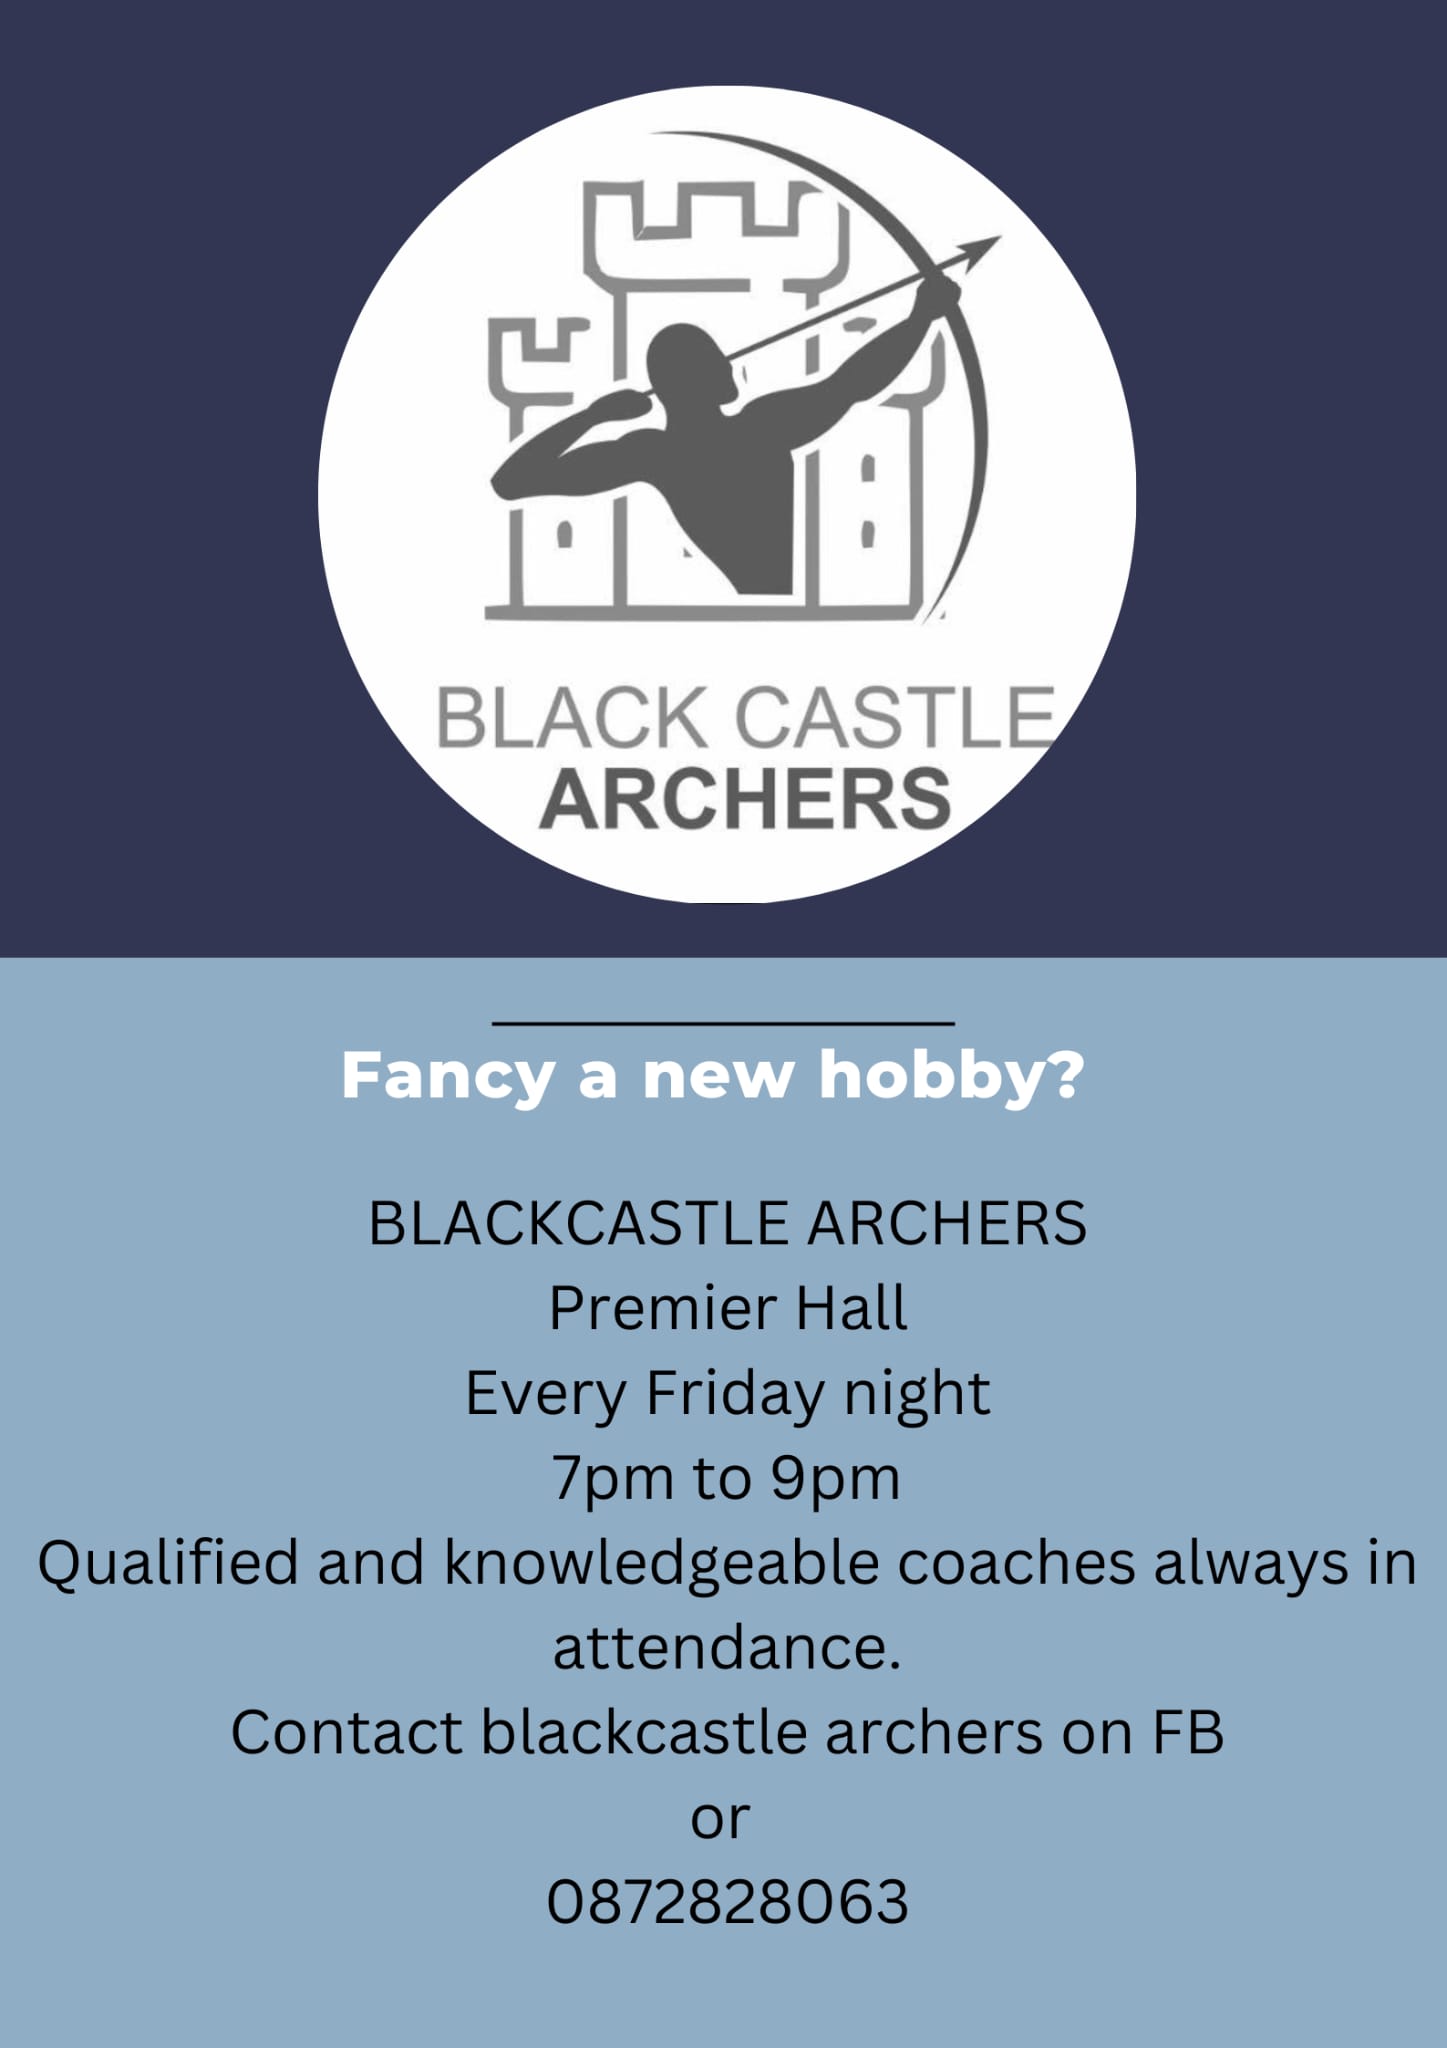 Black Castle Archers Club